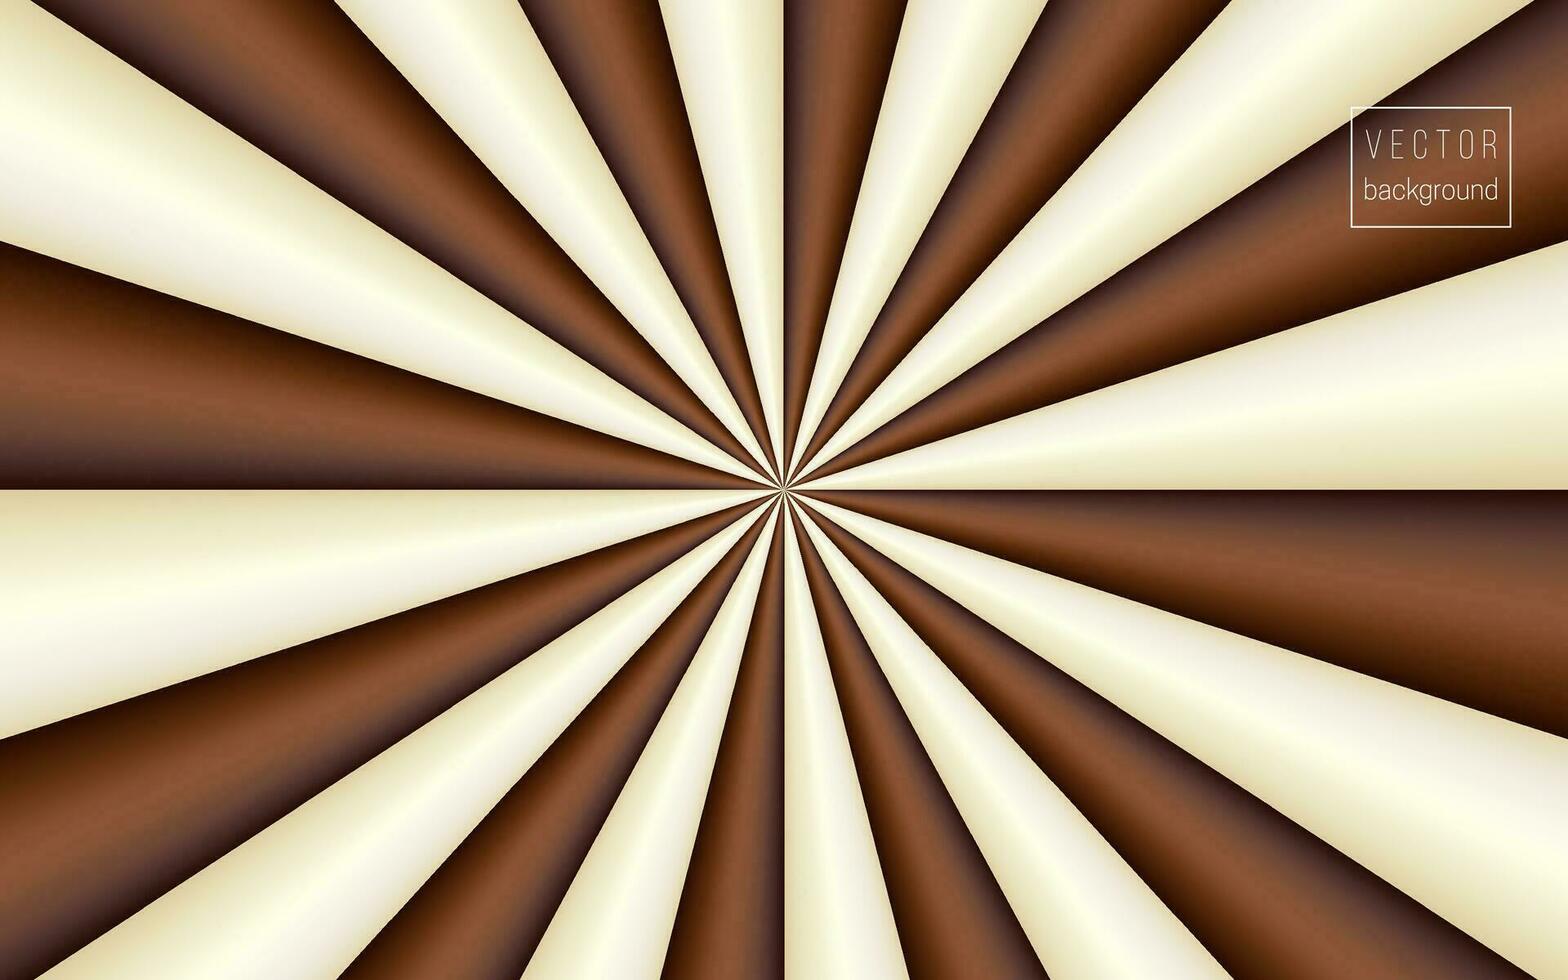 Vektor Schokolade Milch Vektor Hintergrund von wirbelnd Streifen